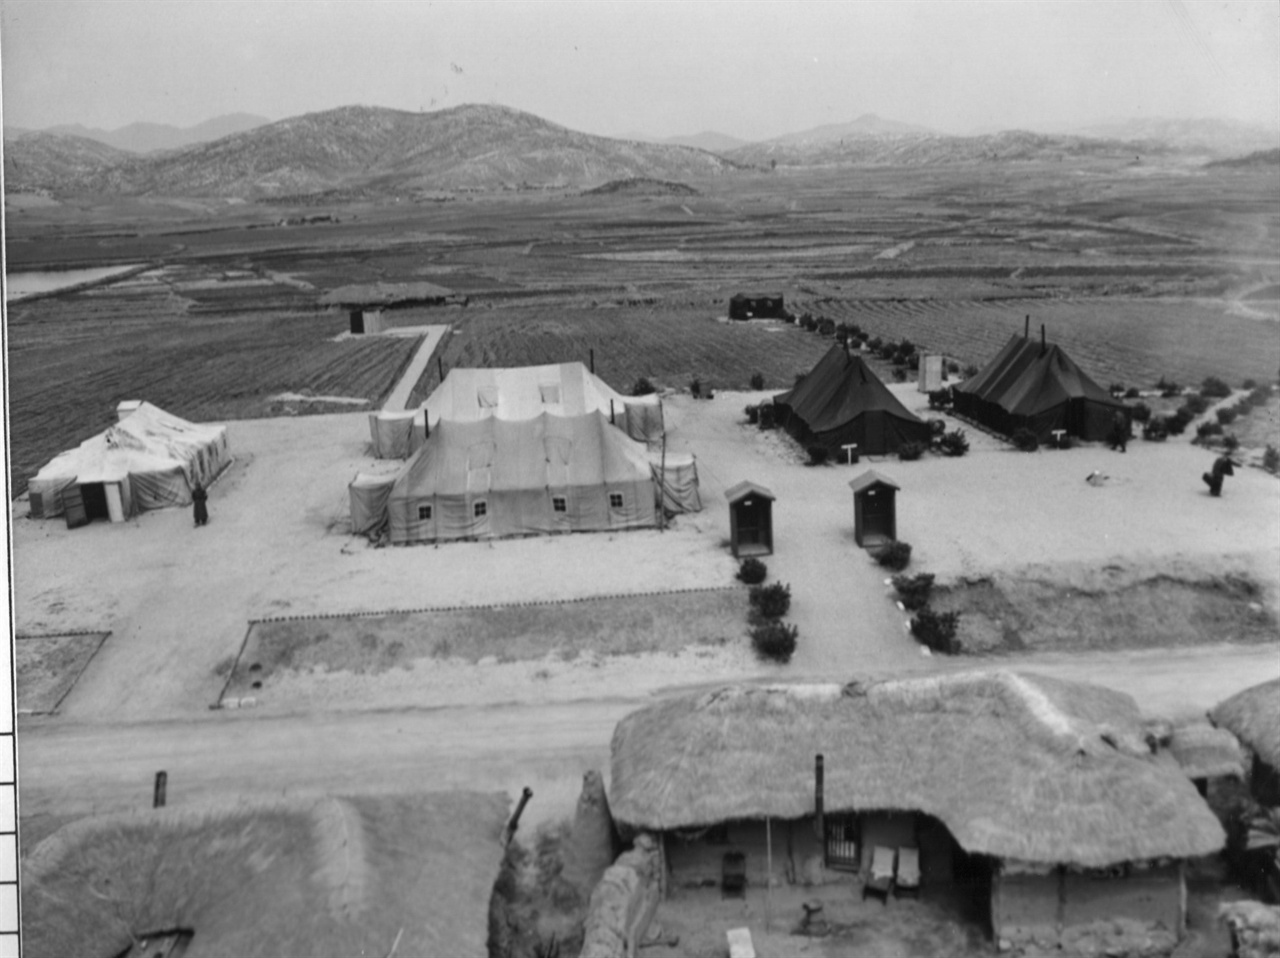  1952. 4. 판문점 정전회담장(왼쪽 흰색이 공산 측 막사, 오른쪽 검은 색이 유엔군 측 막사).